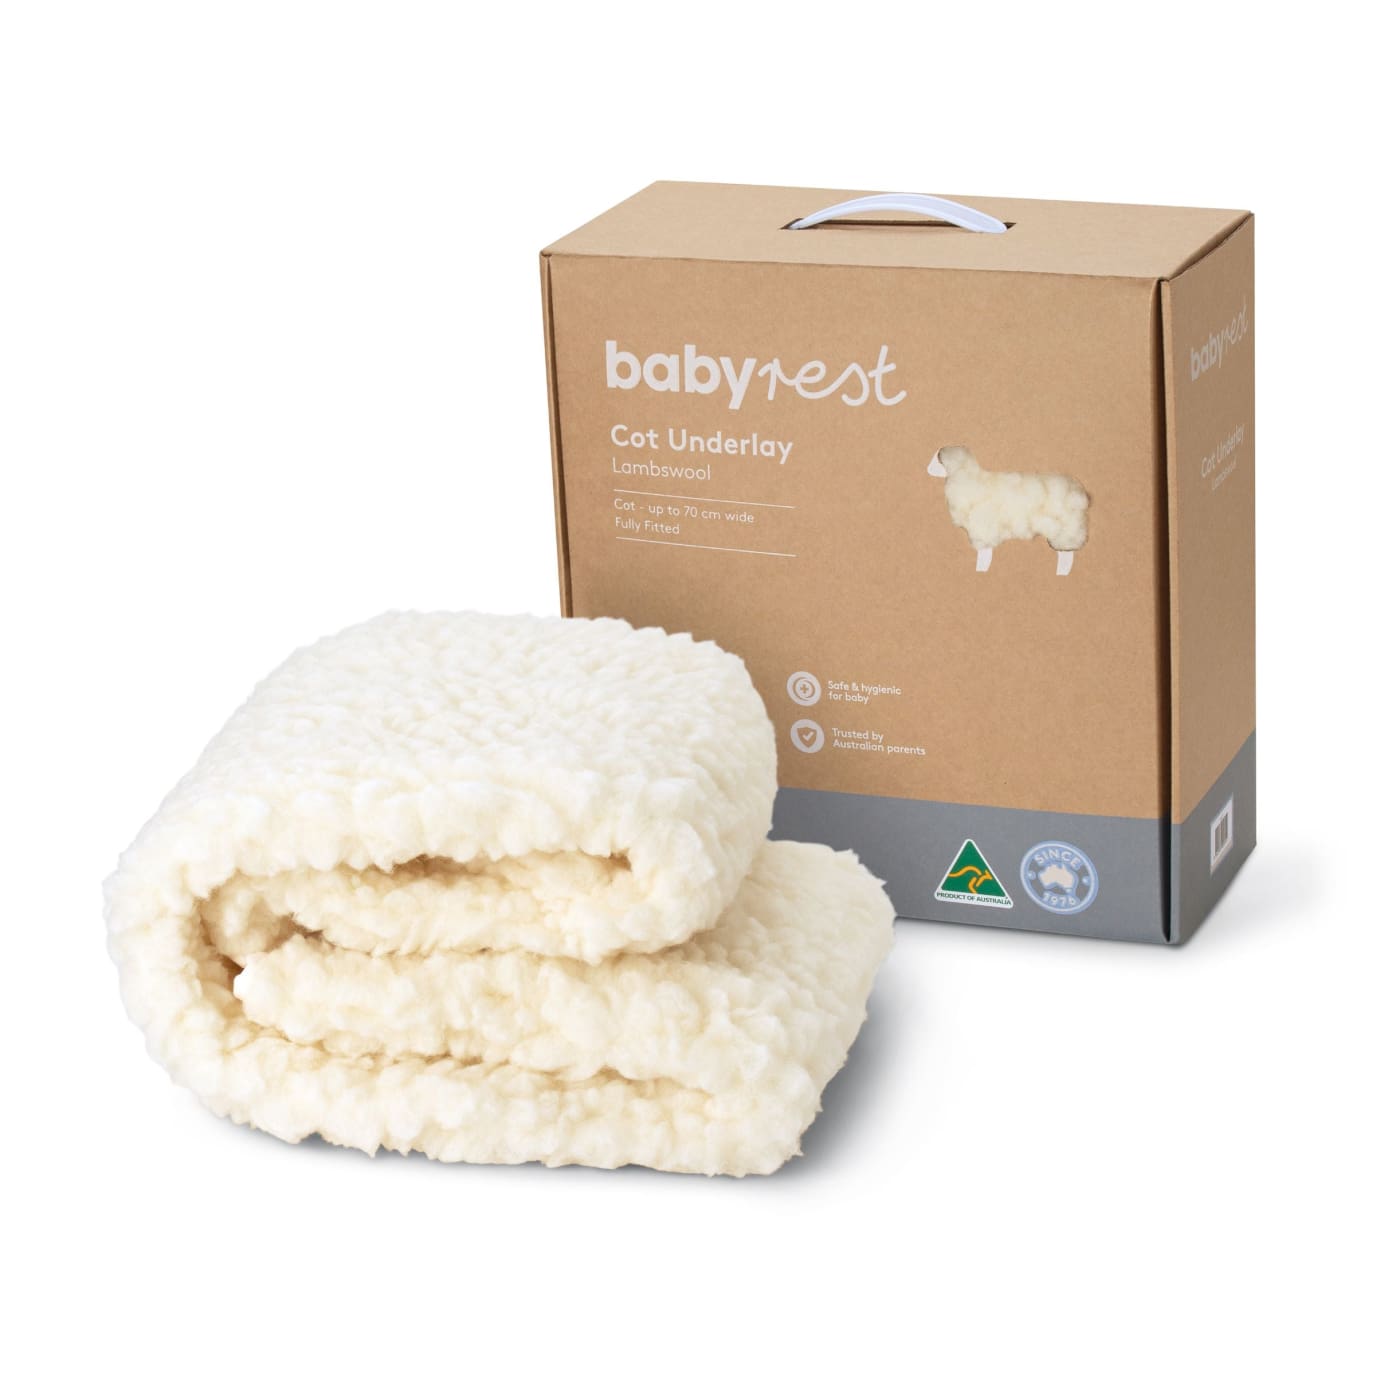 Babyrest Lambswool Cot Underlay to suit mattress 73-77CM Wide - 73-77CM Wide - NURSERY & BEDTIME - COT MATTRESS PROTECTORS